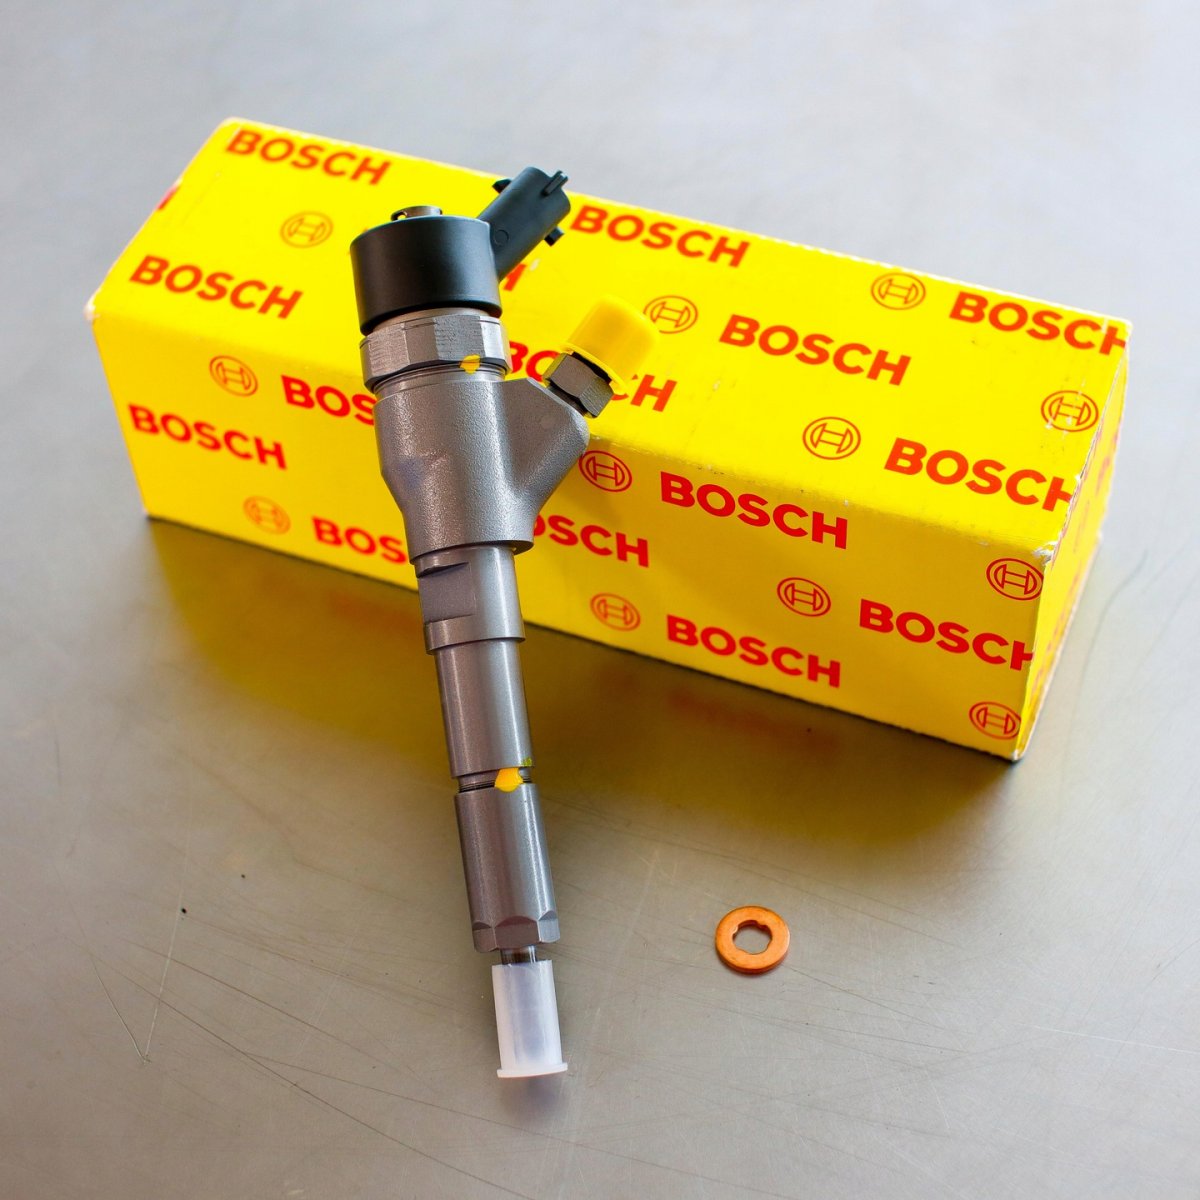 Wtryskiwacz Bosch naprawiony przygotowany do nadania do Klienta na gwarancji na okres 24 miesięcy w korzystnej cenie